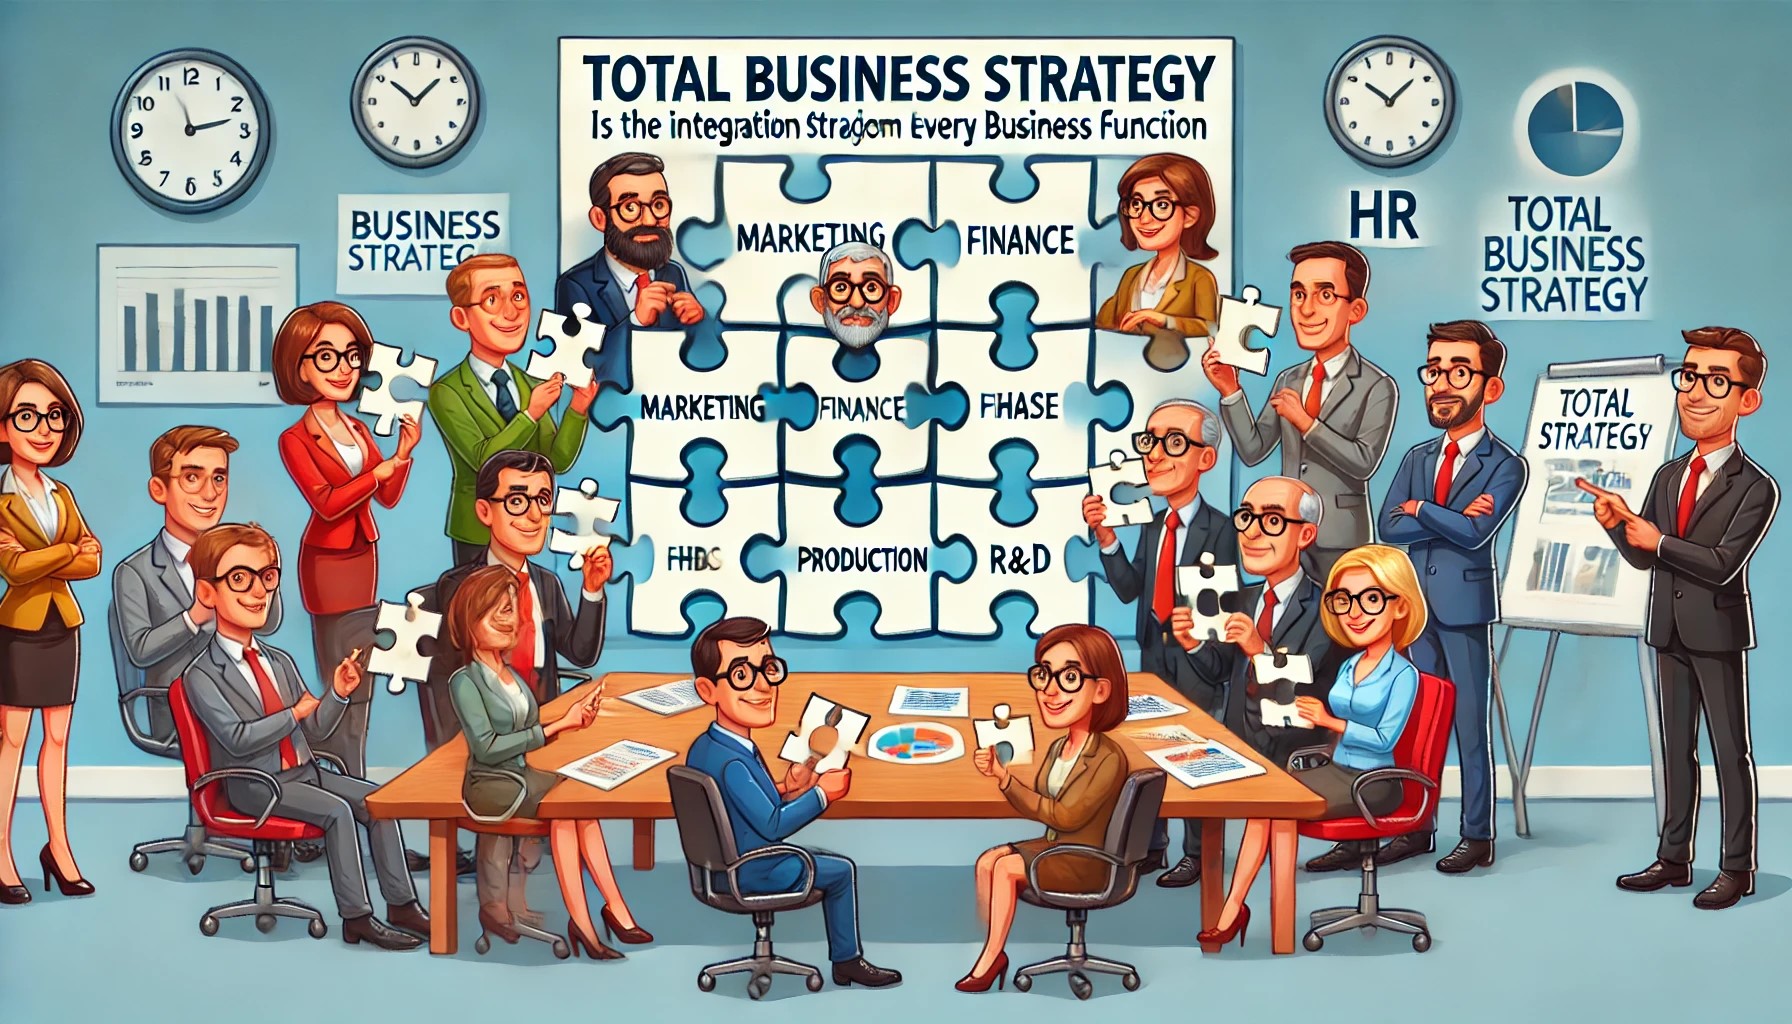 Strategia aziendale, strategia funzionale e ruolo HR